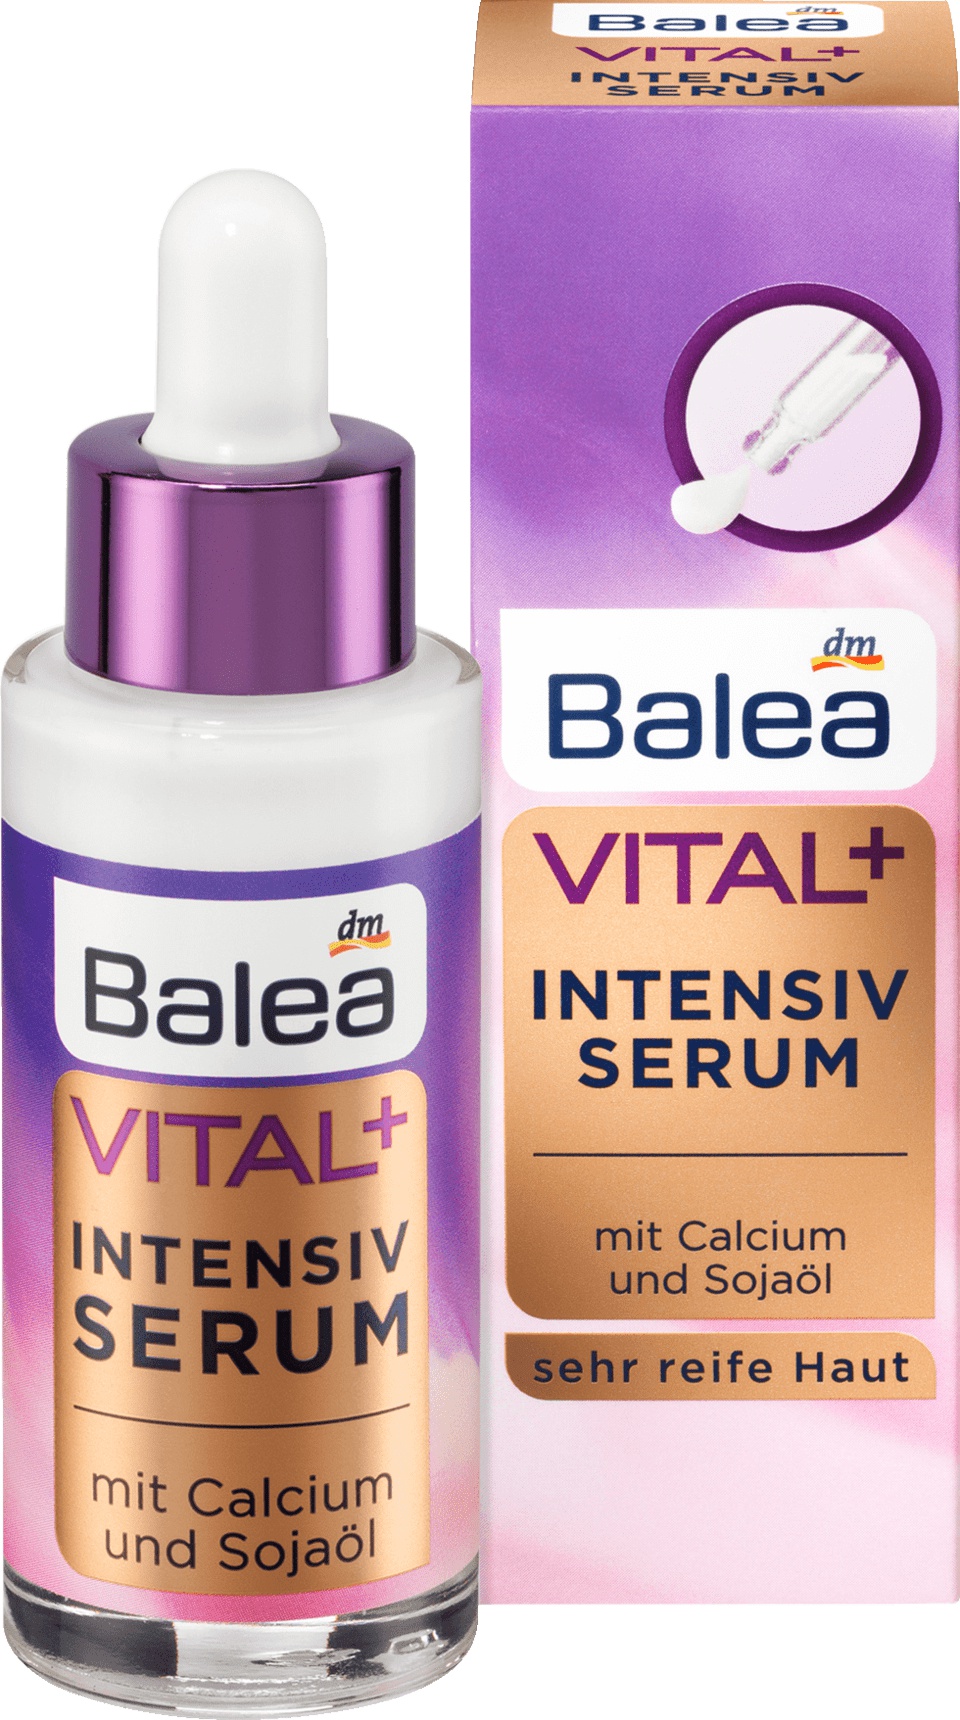 Balea Vital+ Intensiv Serum